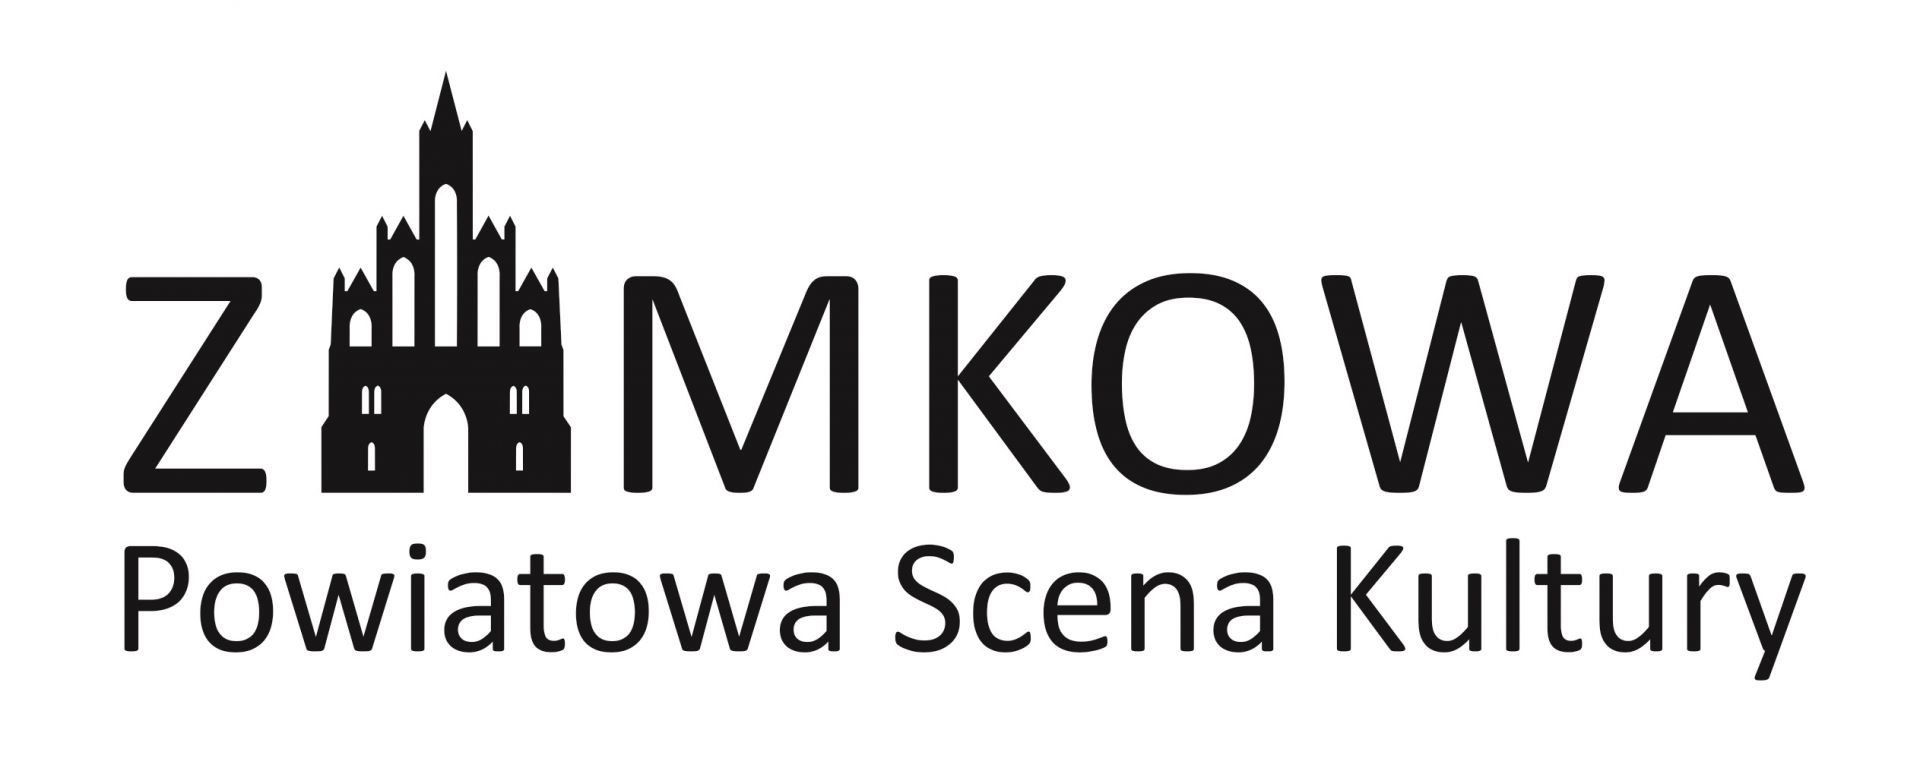 Logotyp Powiatowej Sceny Kultury ZAMKOWA